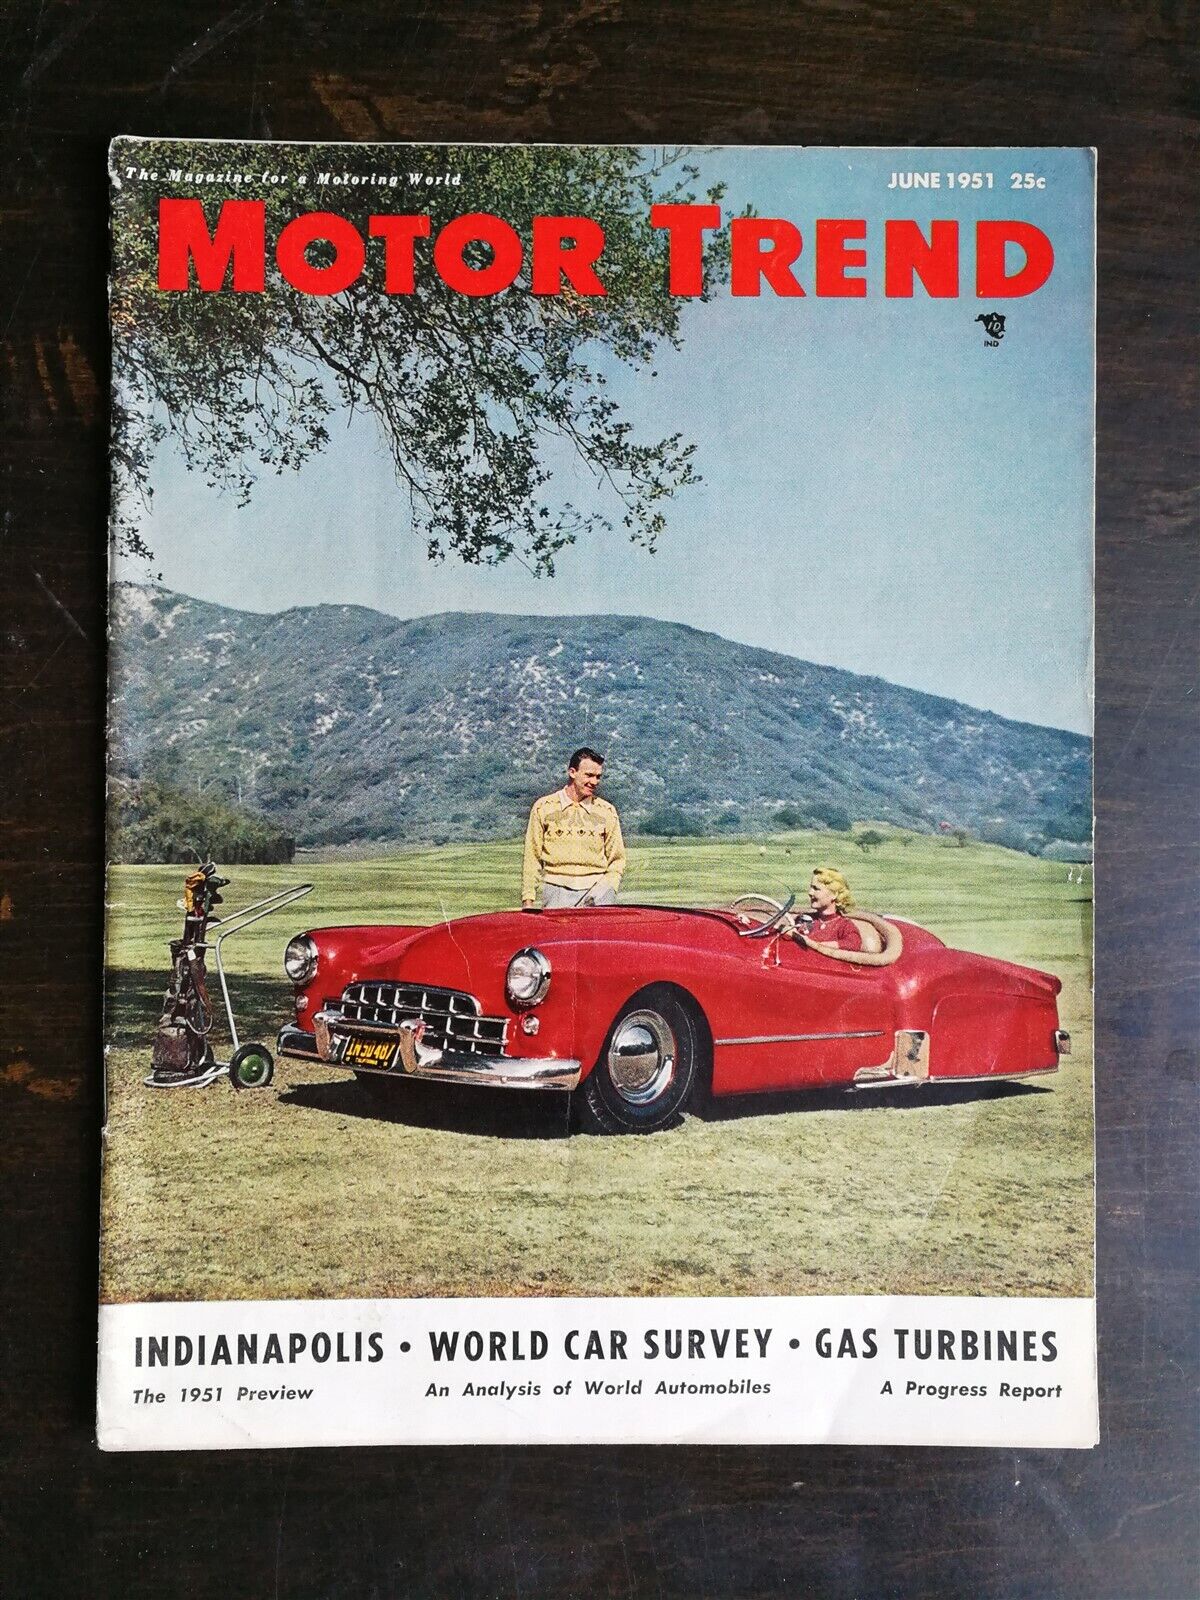 Motor Trend Magazine June 1951 - Studebaker V-8 - Customs - Stars & Cars